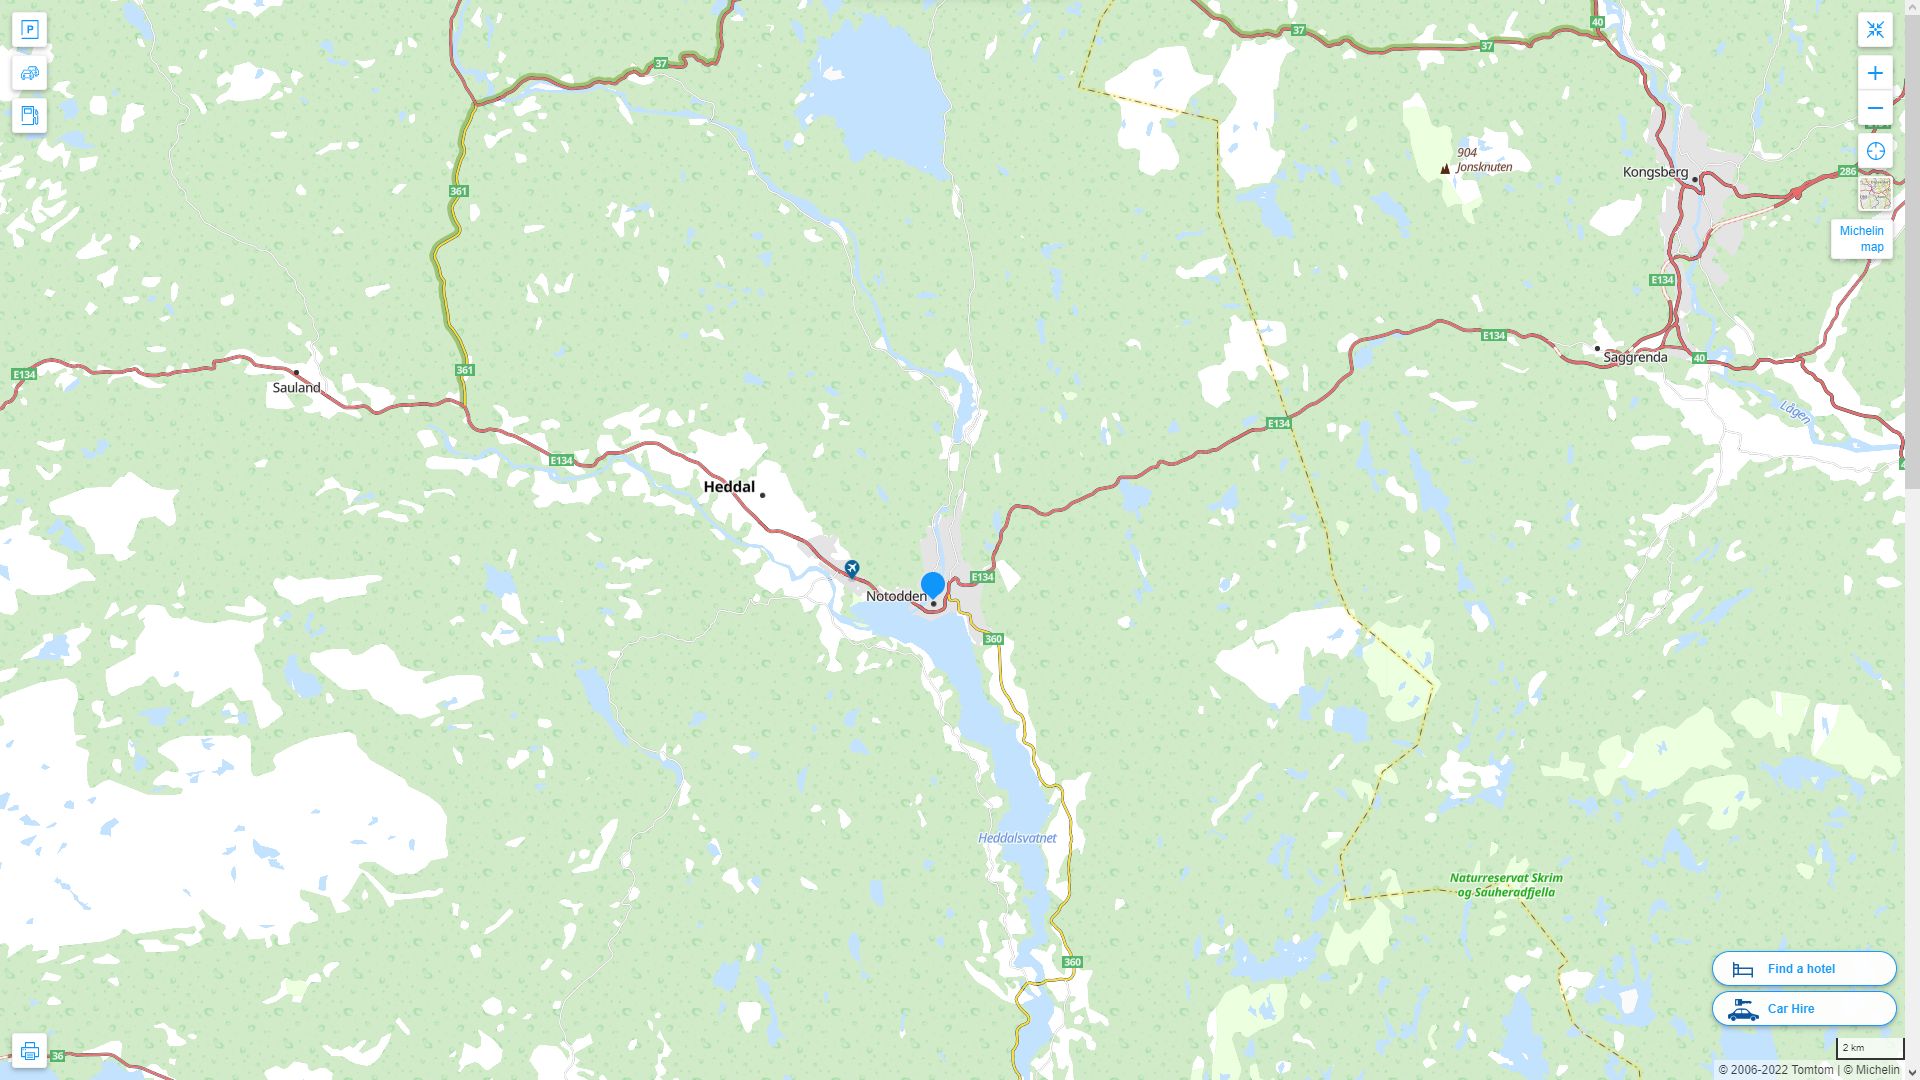 Notodden Norvege Autoroute et carte routiere